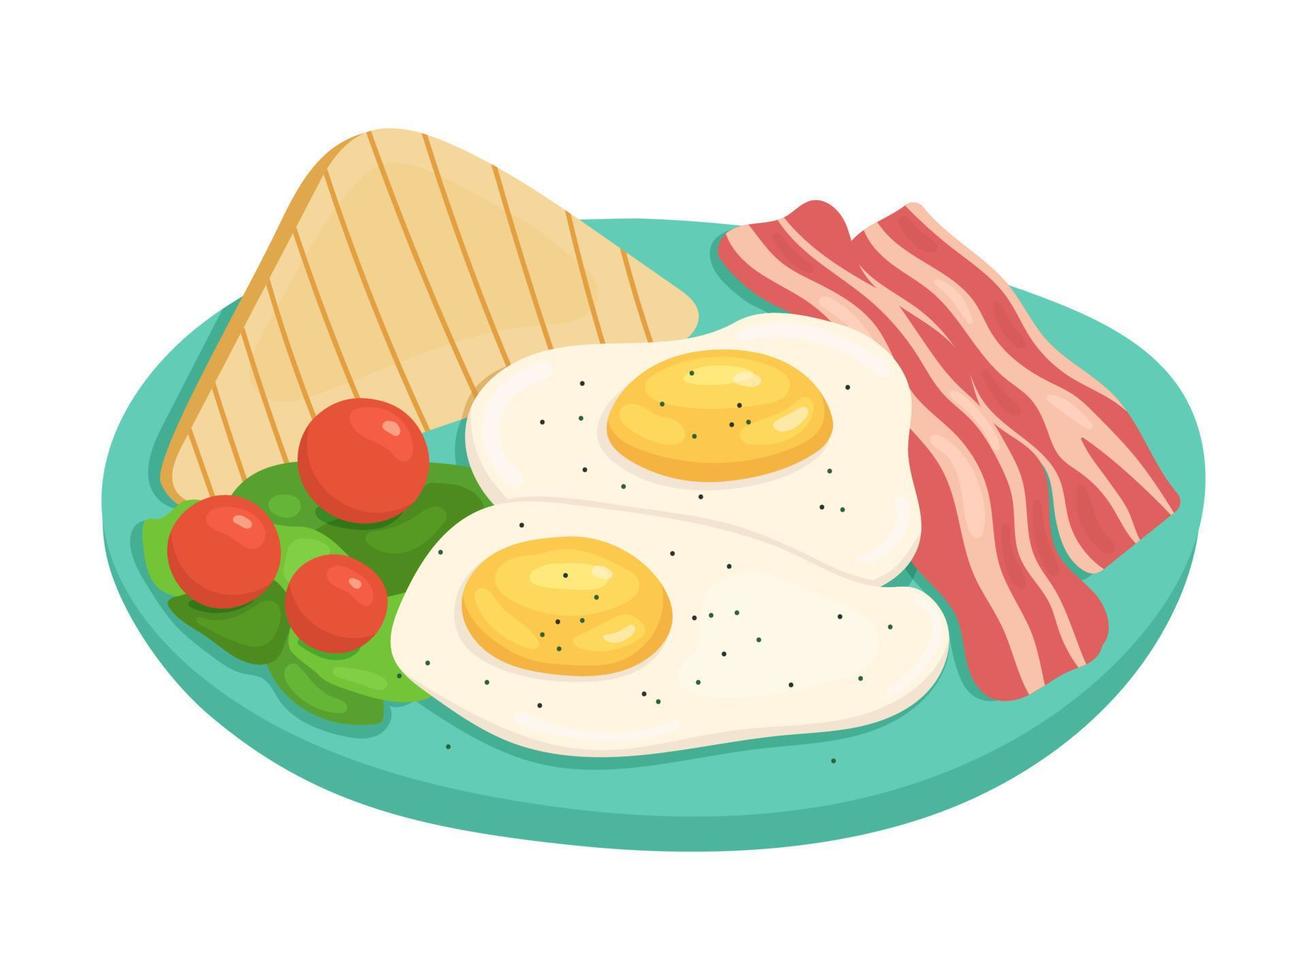 desayuno tradicional inglés de huevos revueltos, tocino y tostadas con verduras. ilustración vectorial de alimentos. vector